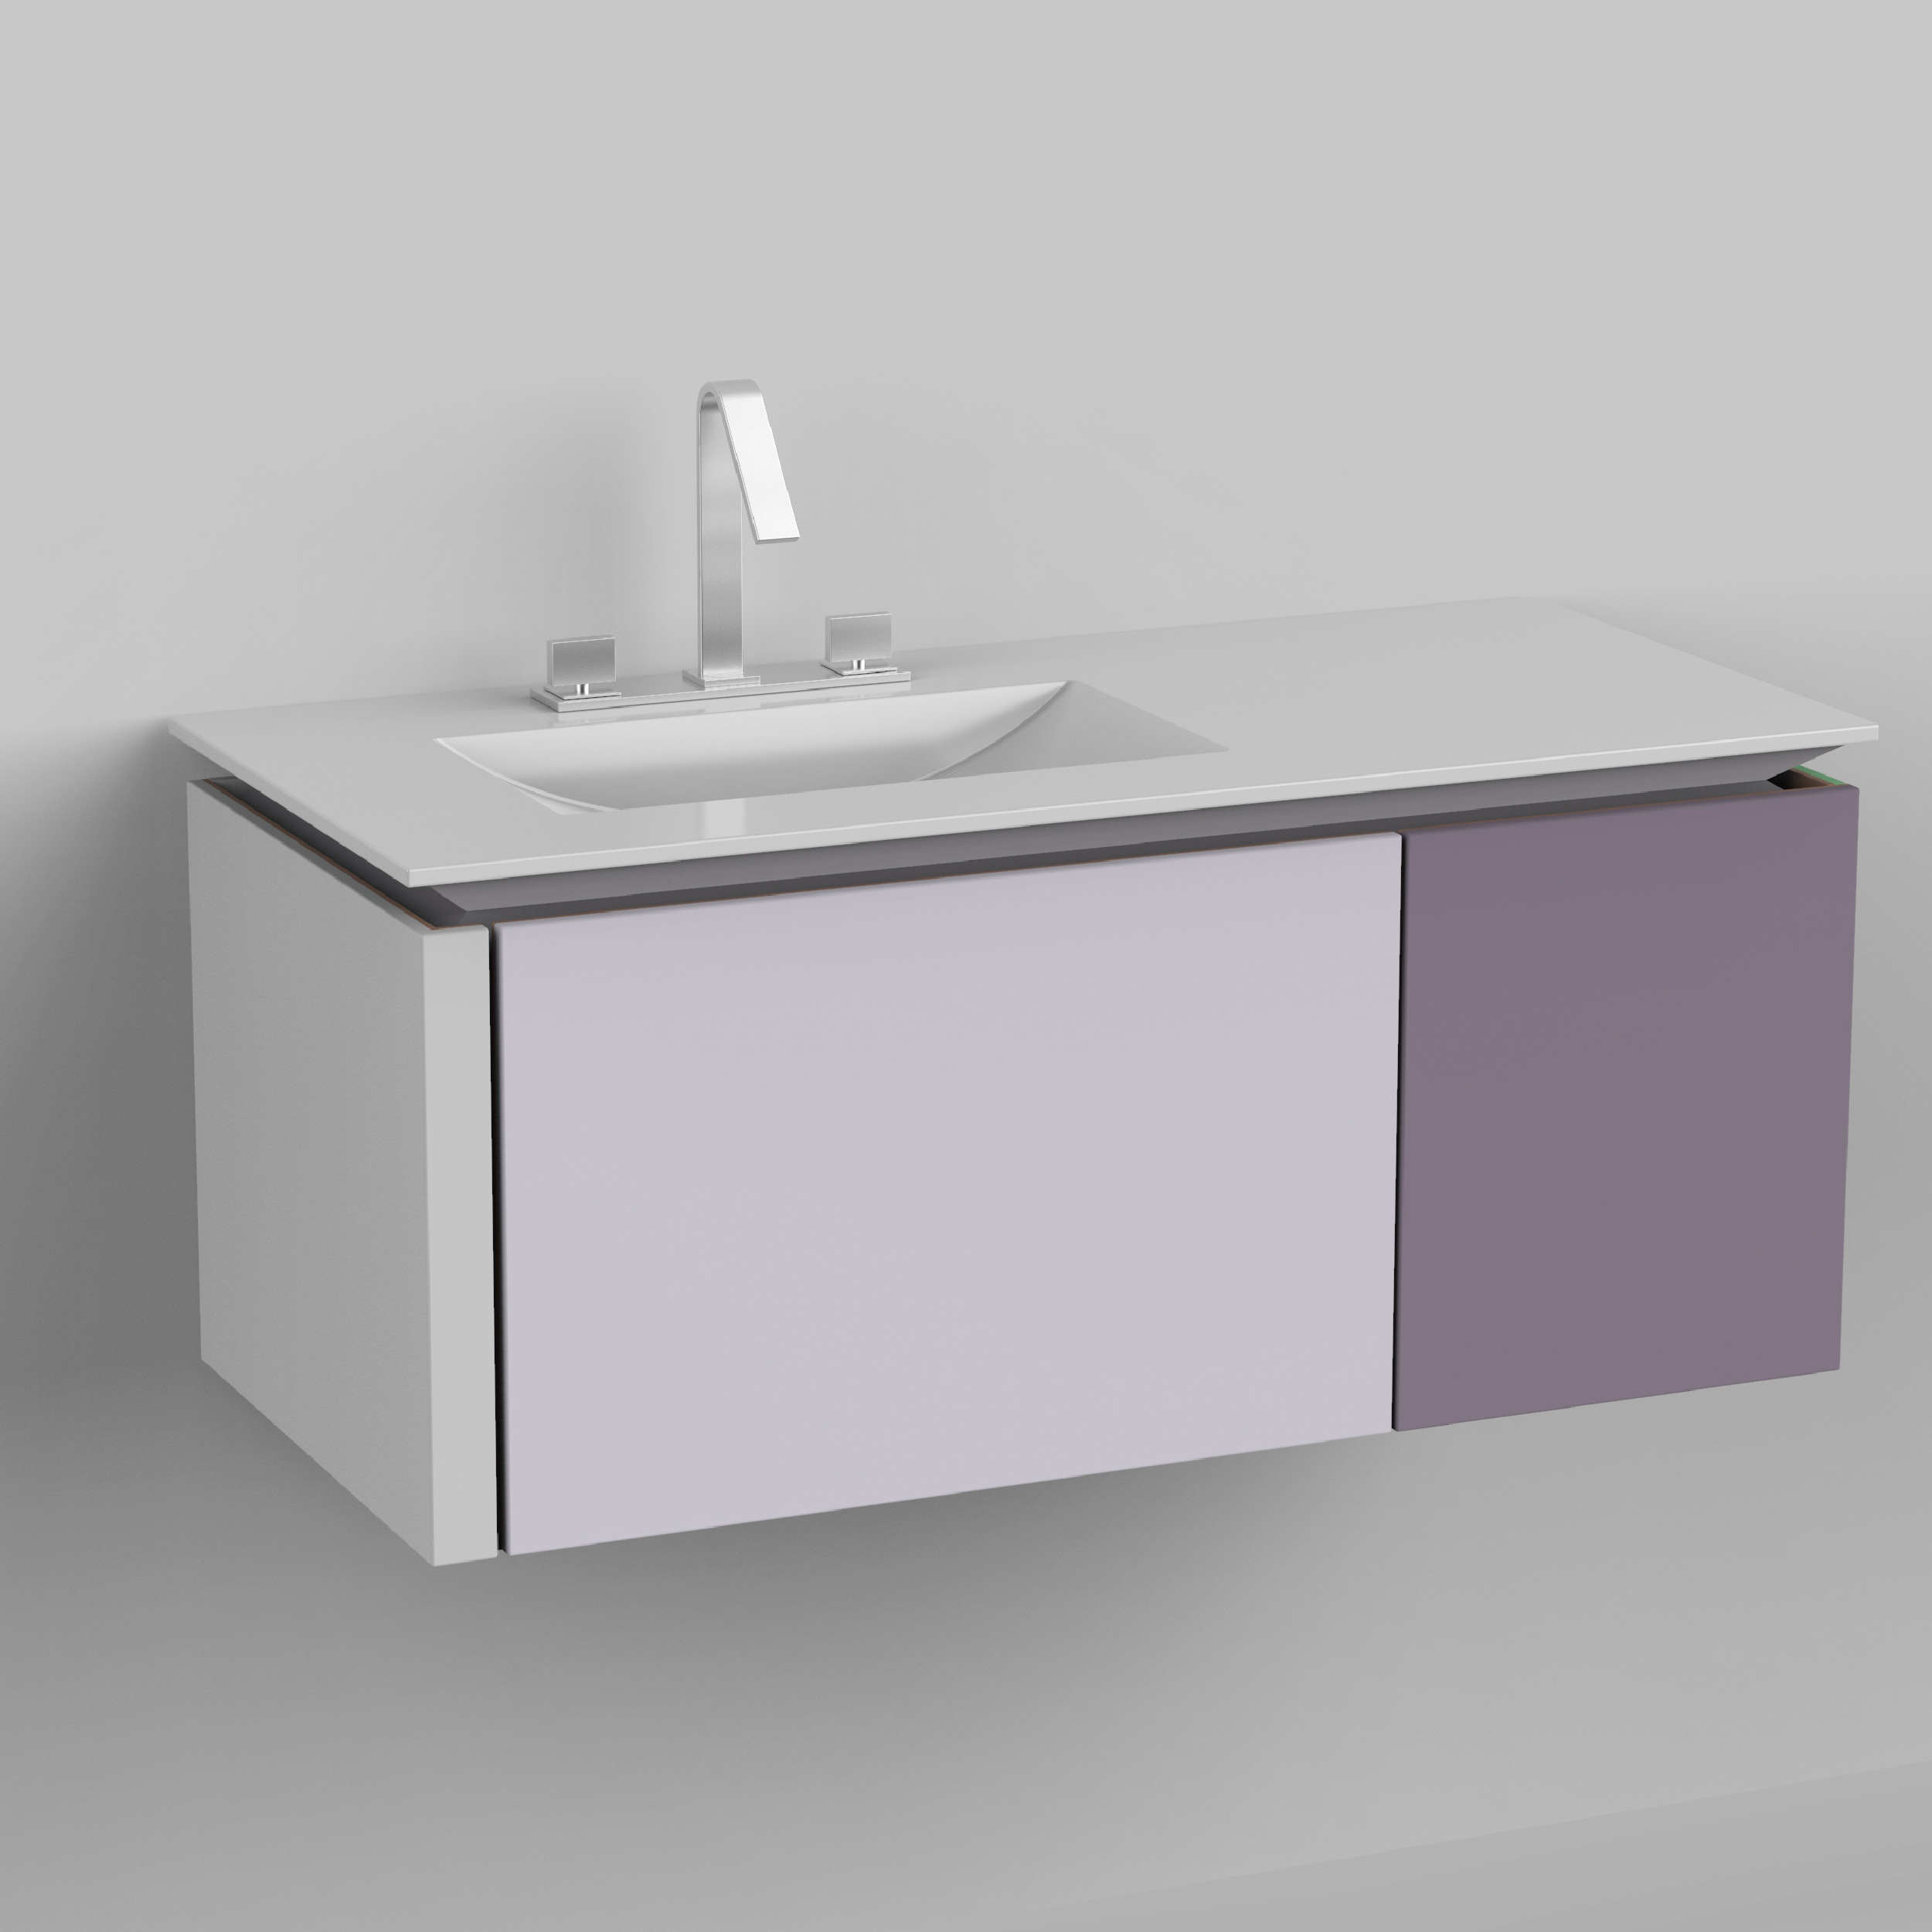 Wall Mounted Bathroom Vanities Remodel Ideas Cabinet Macarons Series